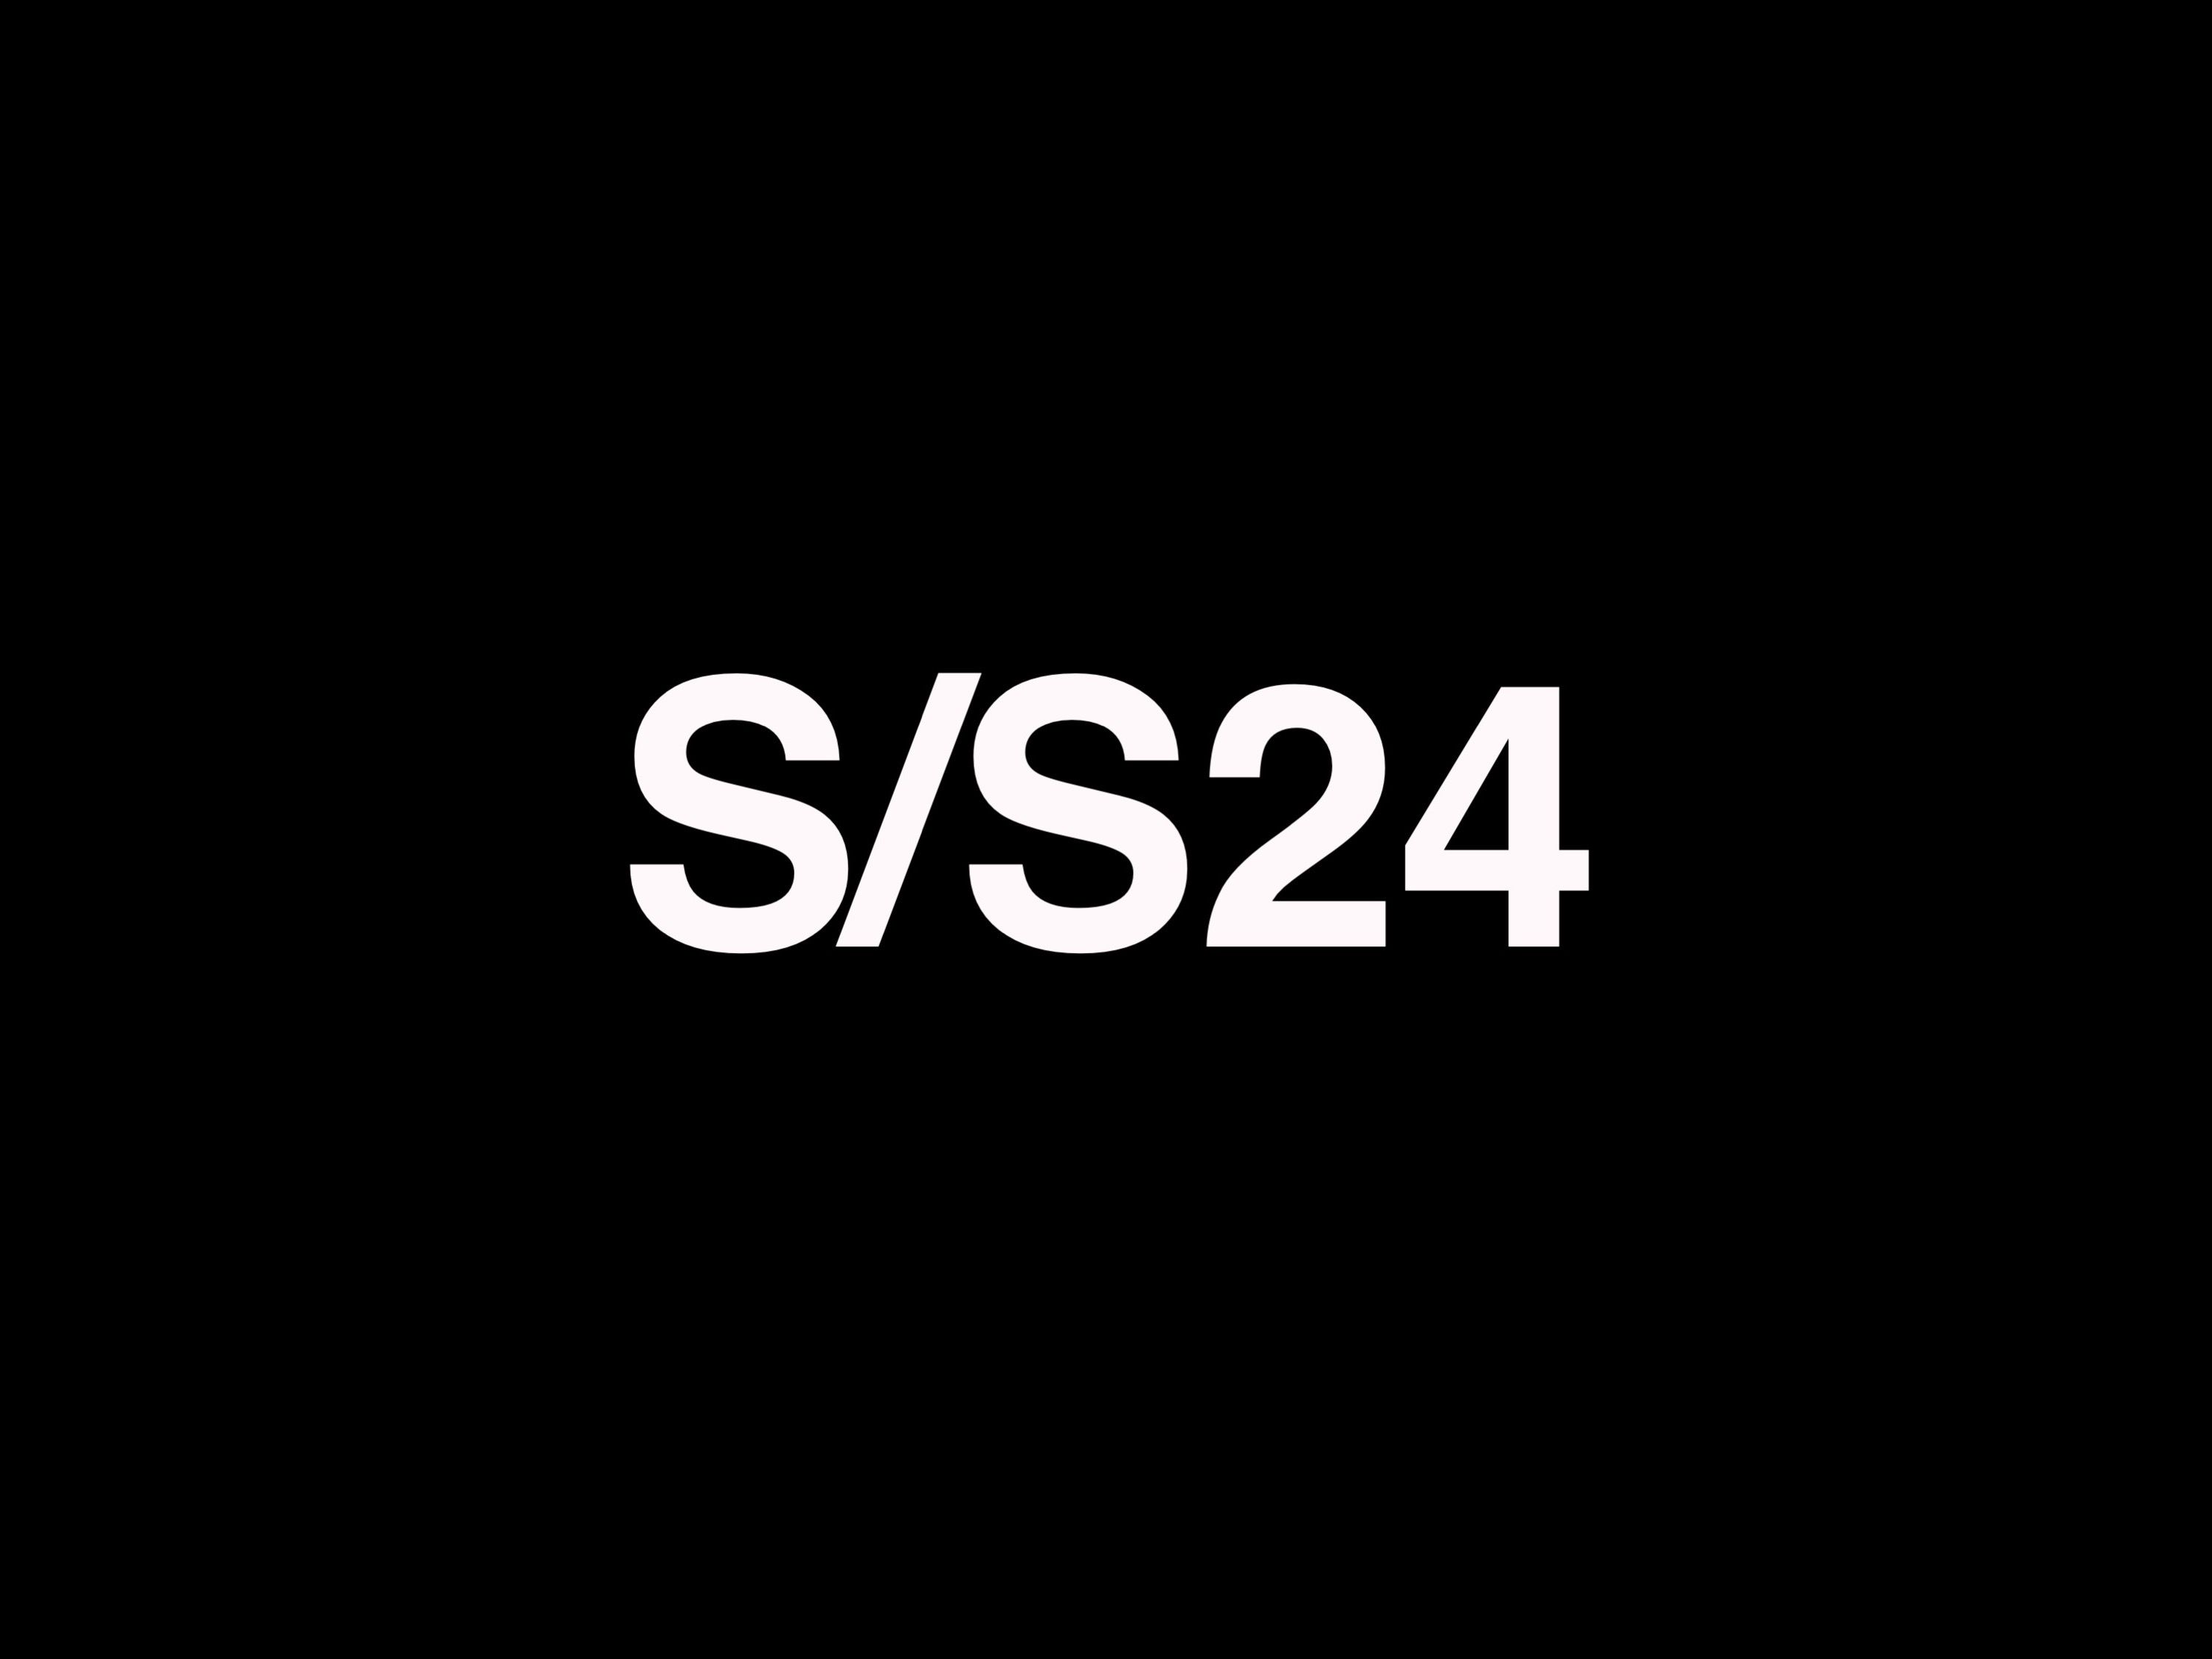 S/S24